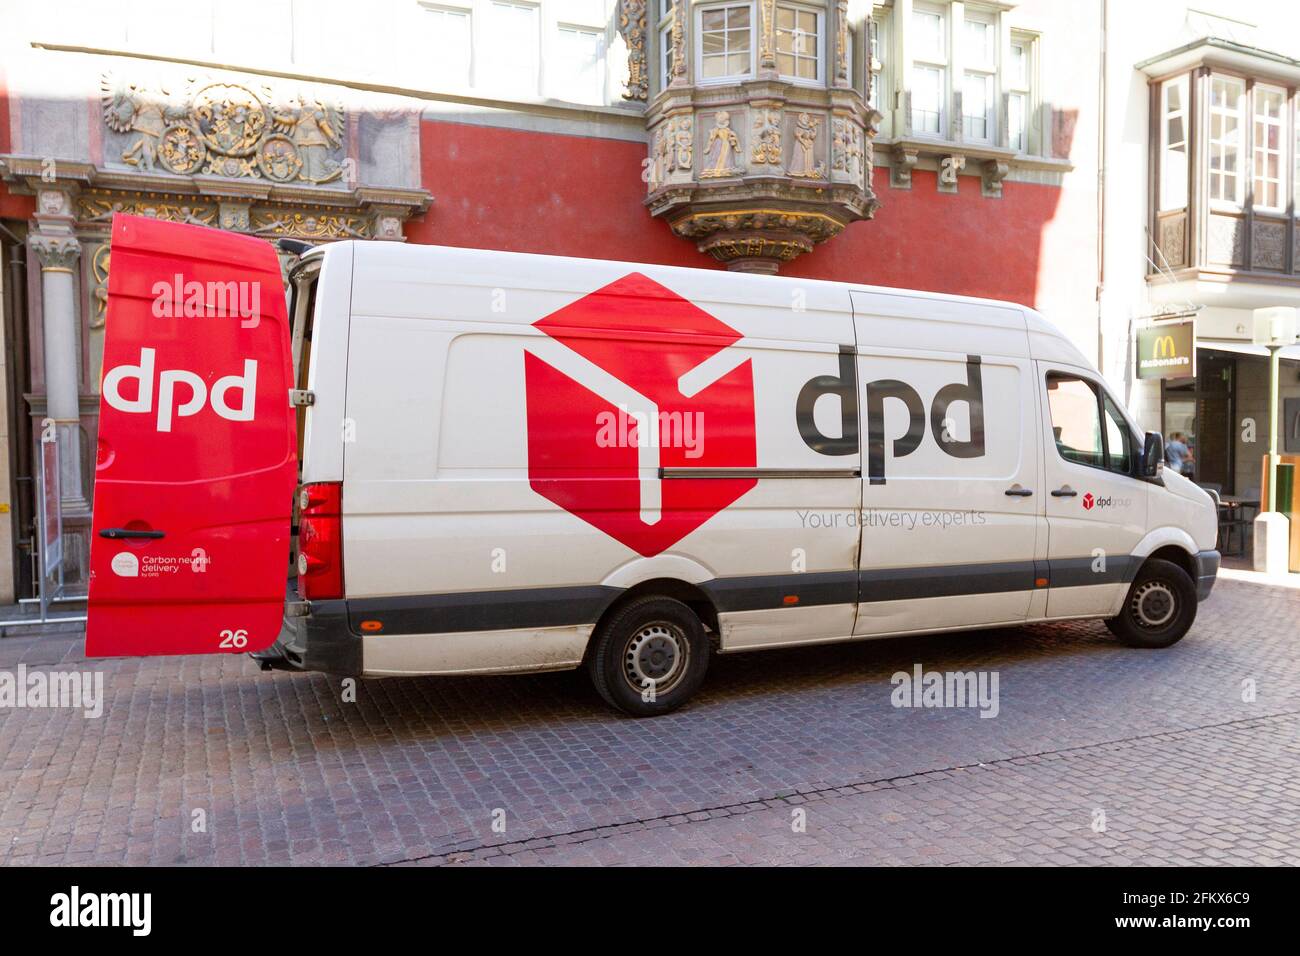 DPD, Service de colis allemand Banque D'Images